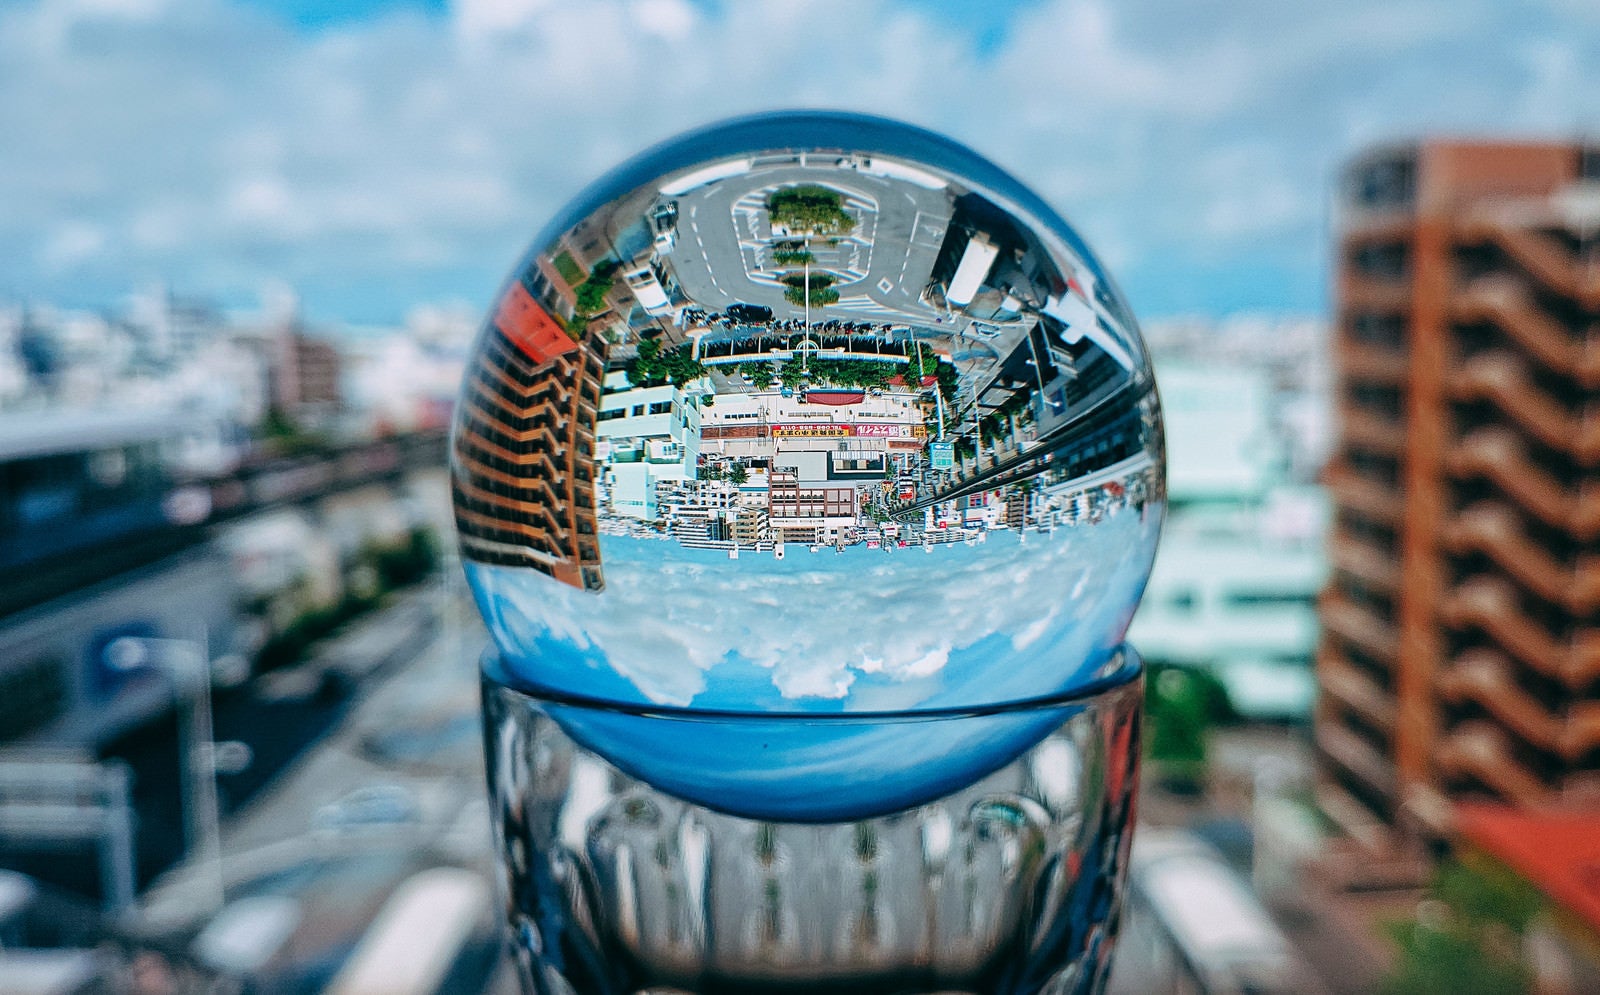 「グラスに置いたガラス玉から見る街なみ」の写真